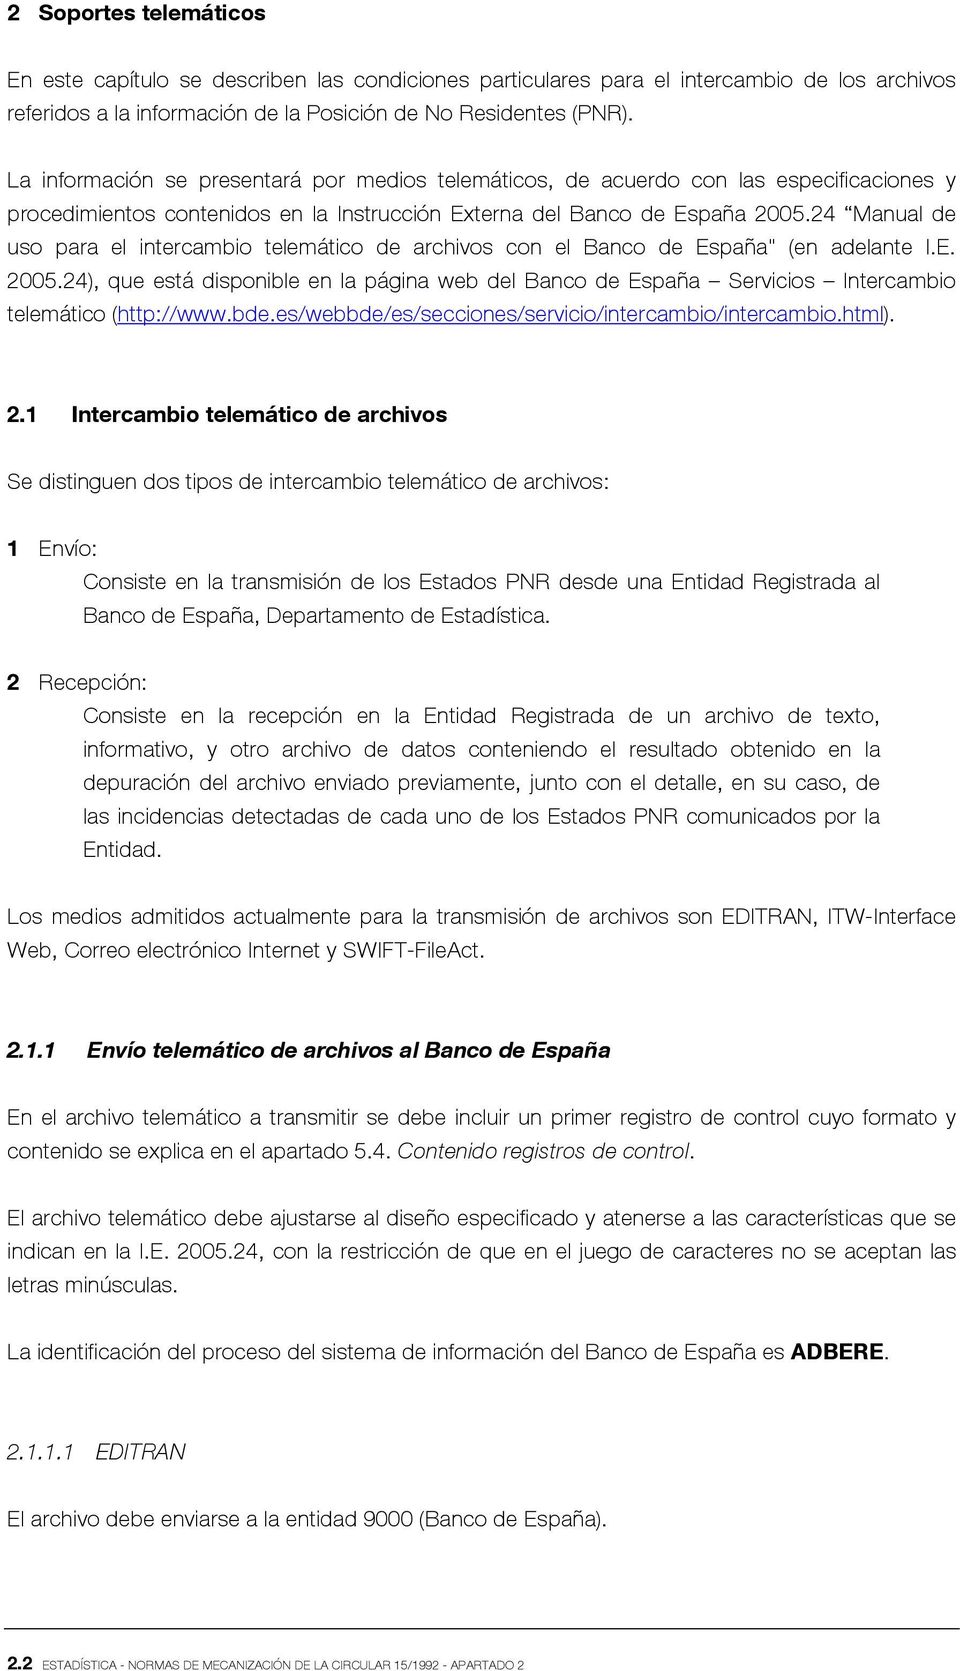 24 Manual de uso para el intercambio telemático de archivos con el Banco de España" (en adelante I.E. 2005.